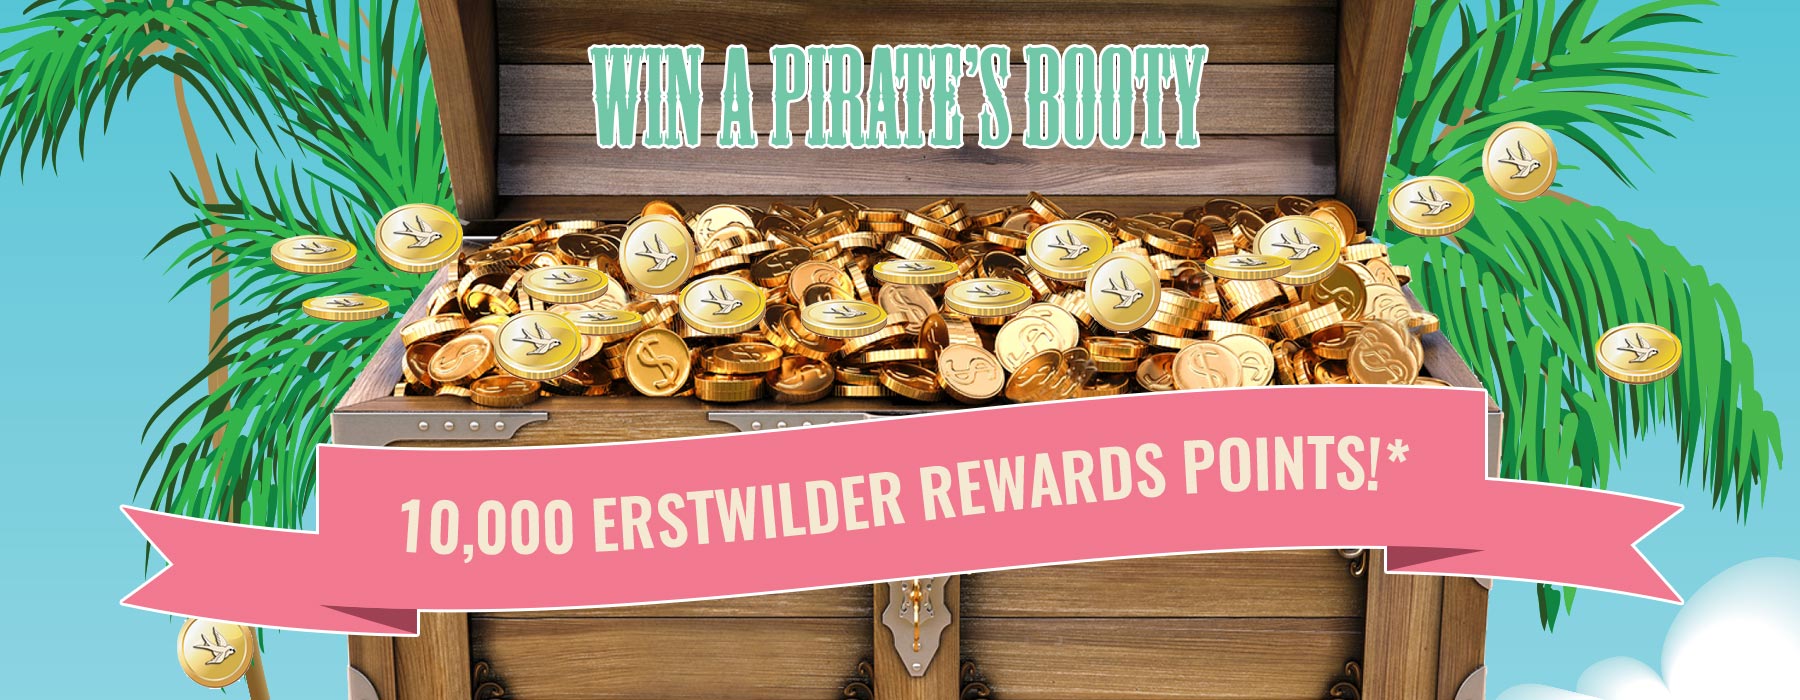 Erstwilder Rewards Points Giveaway - Win a Pirates Treasure